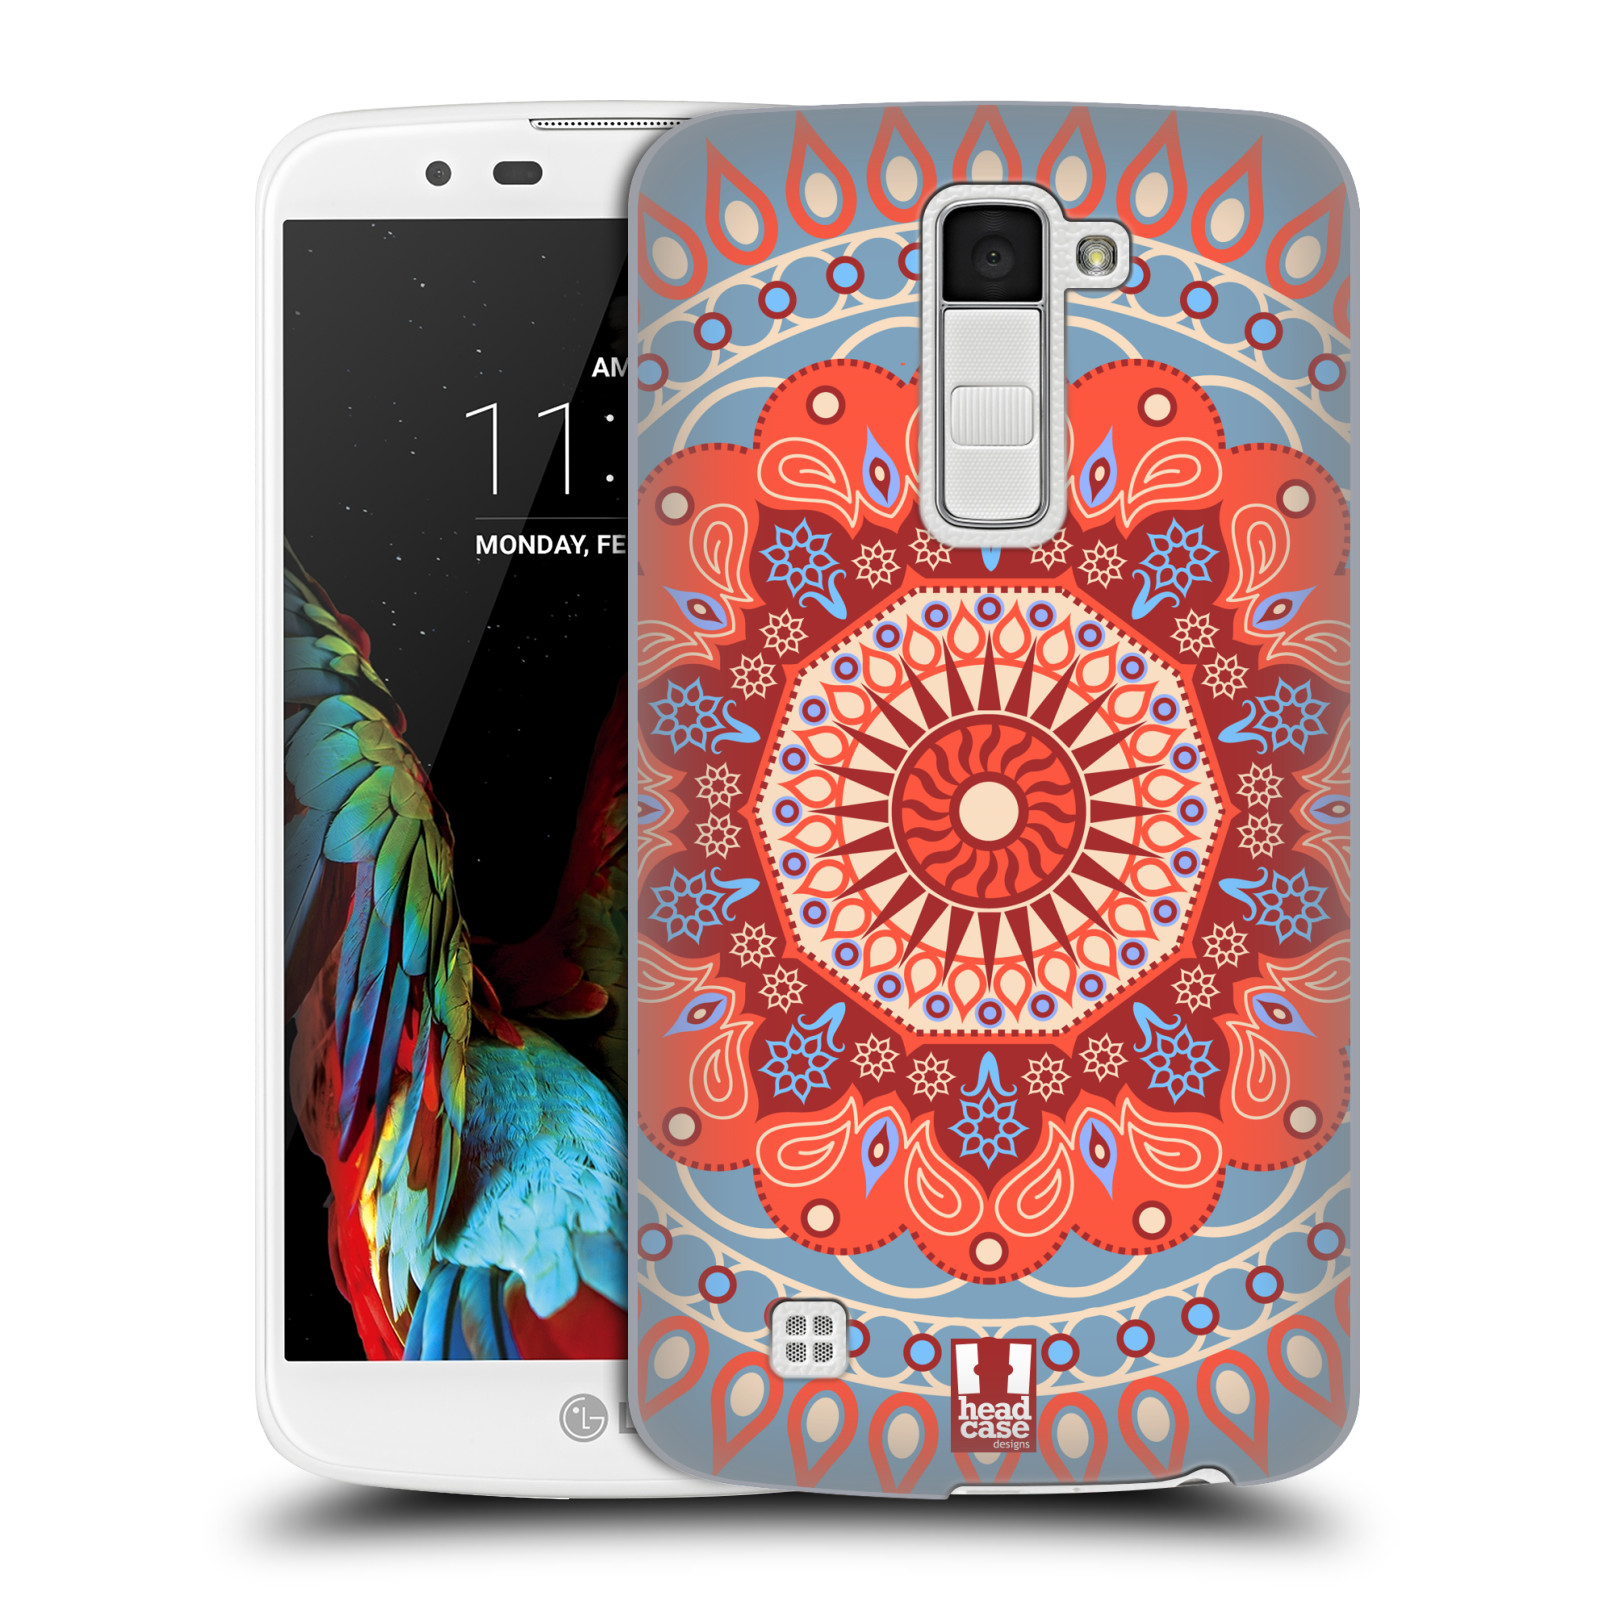 HEAD CASE plastový obal na mobil LG K10 vzor Indie Mandala slunce barevný motiv ČERVENÁ A MODRÁ